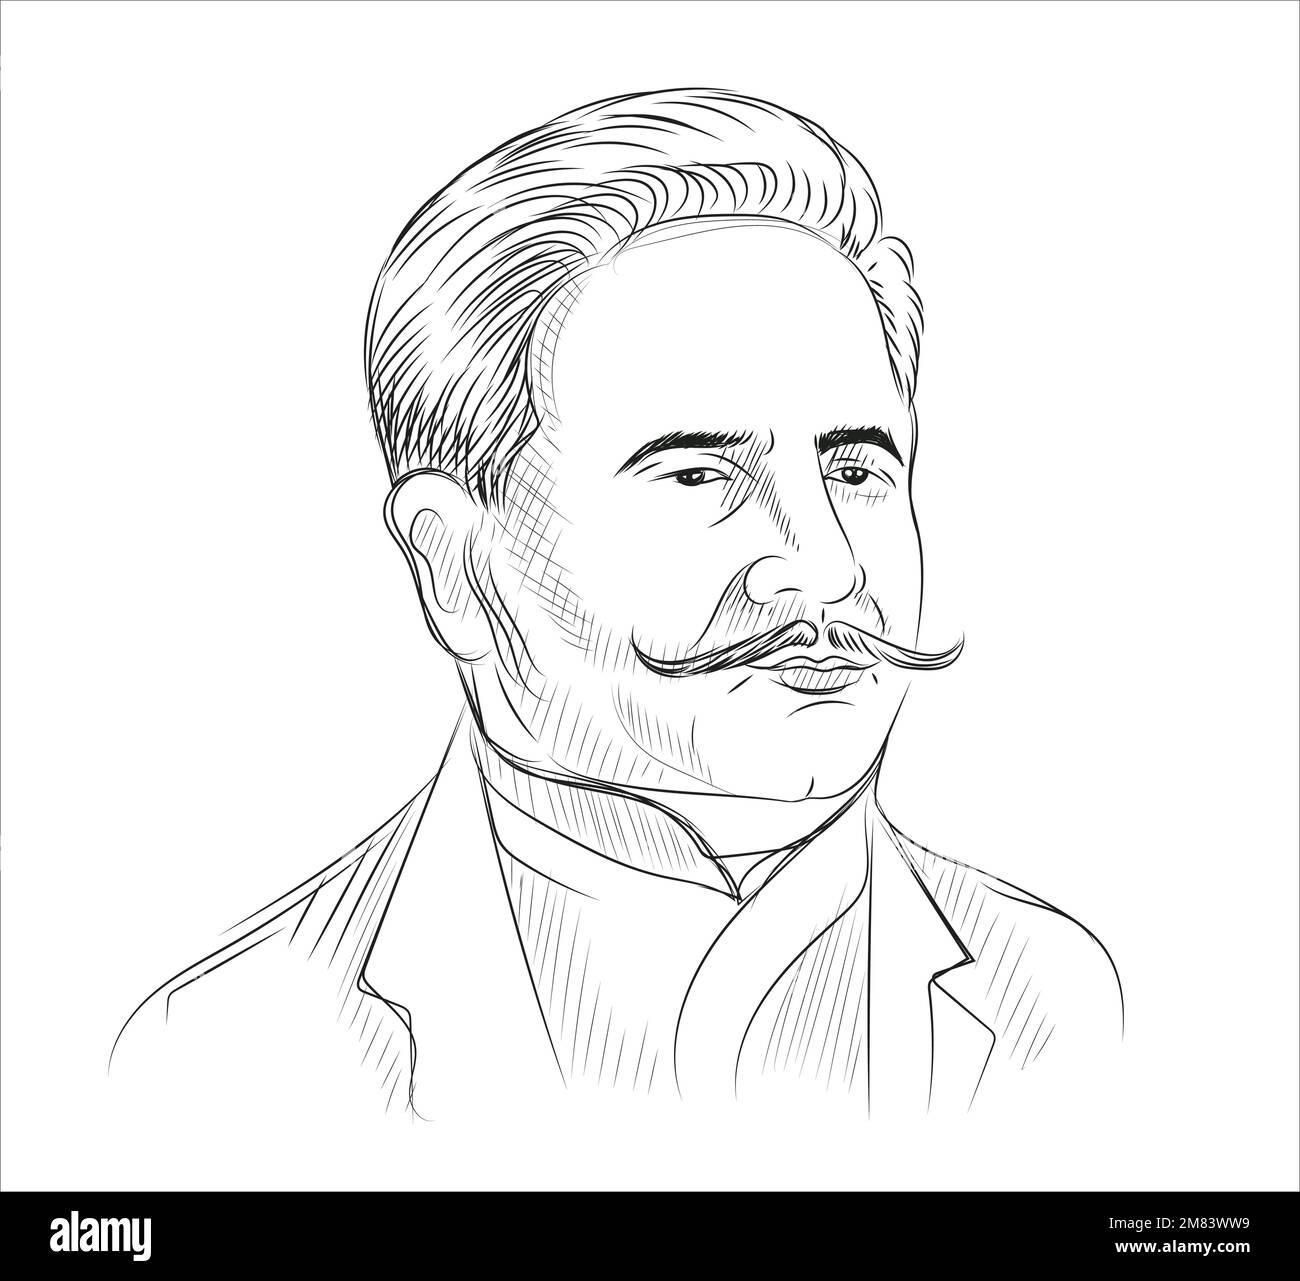 Disegno a mano Allama Iqbal, illustrazione vettoriale del poeta pakistano Illustrazione Vettoriale